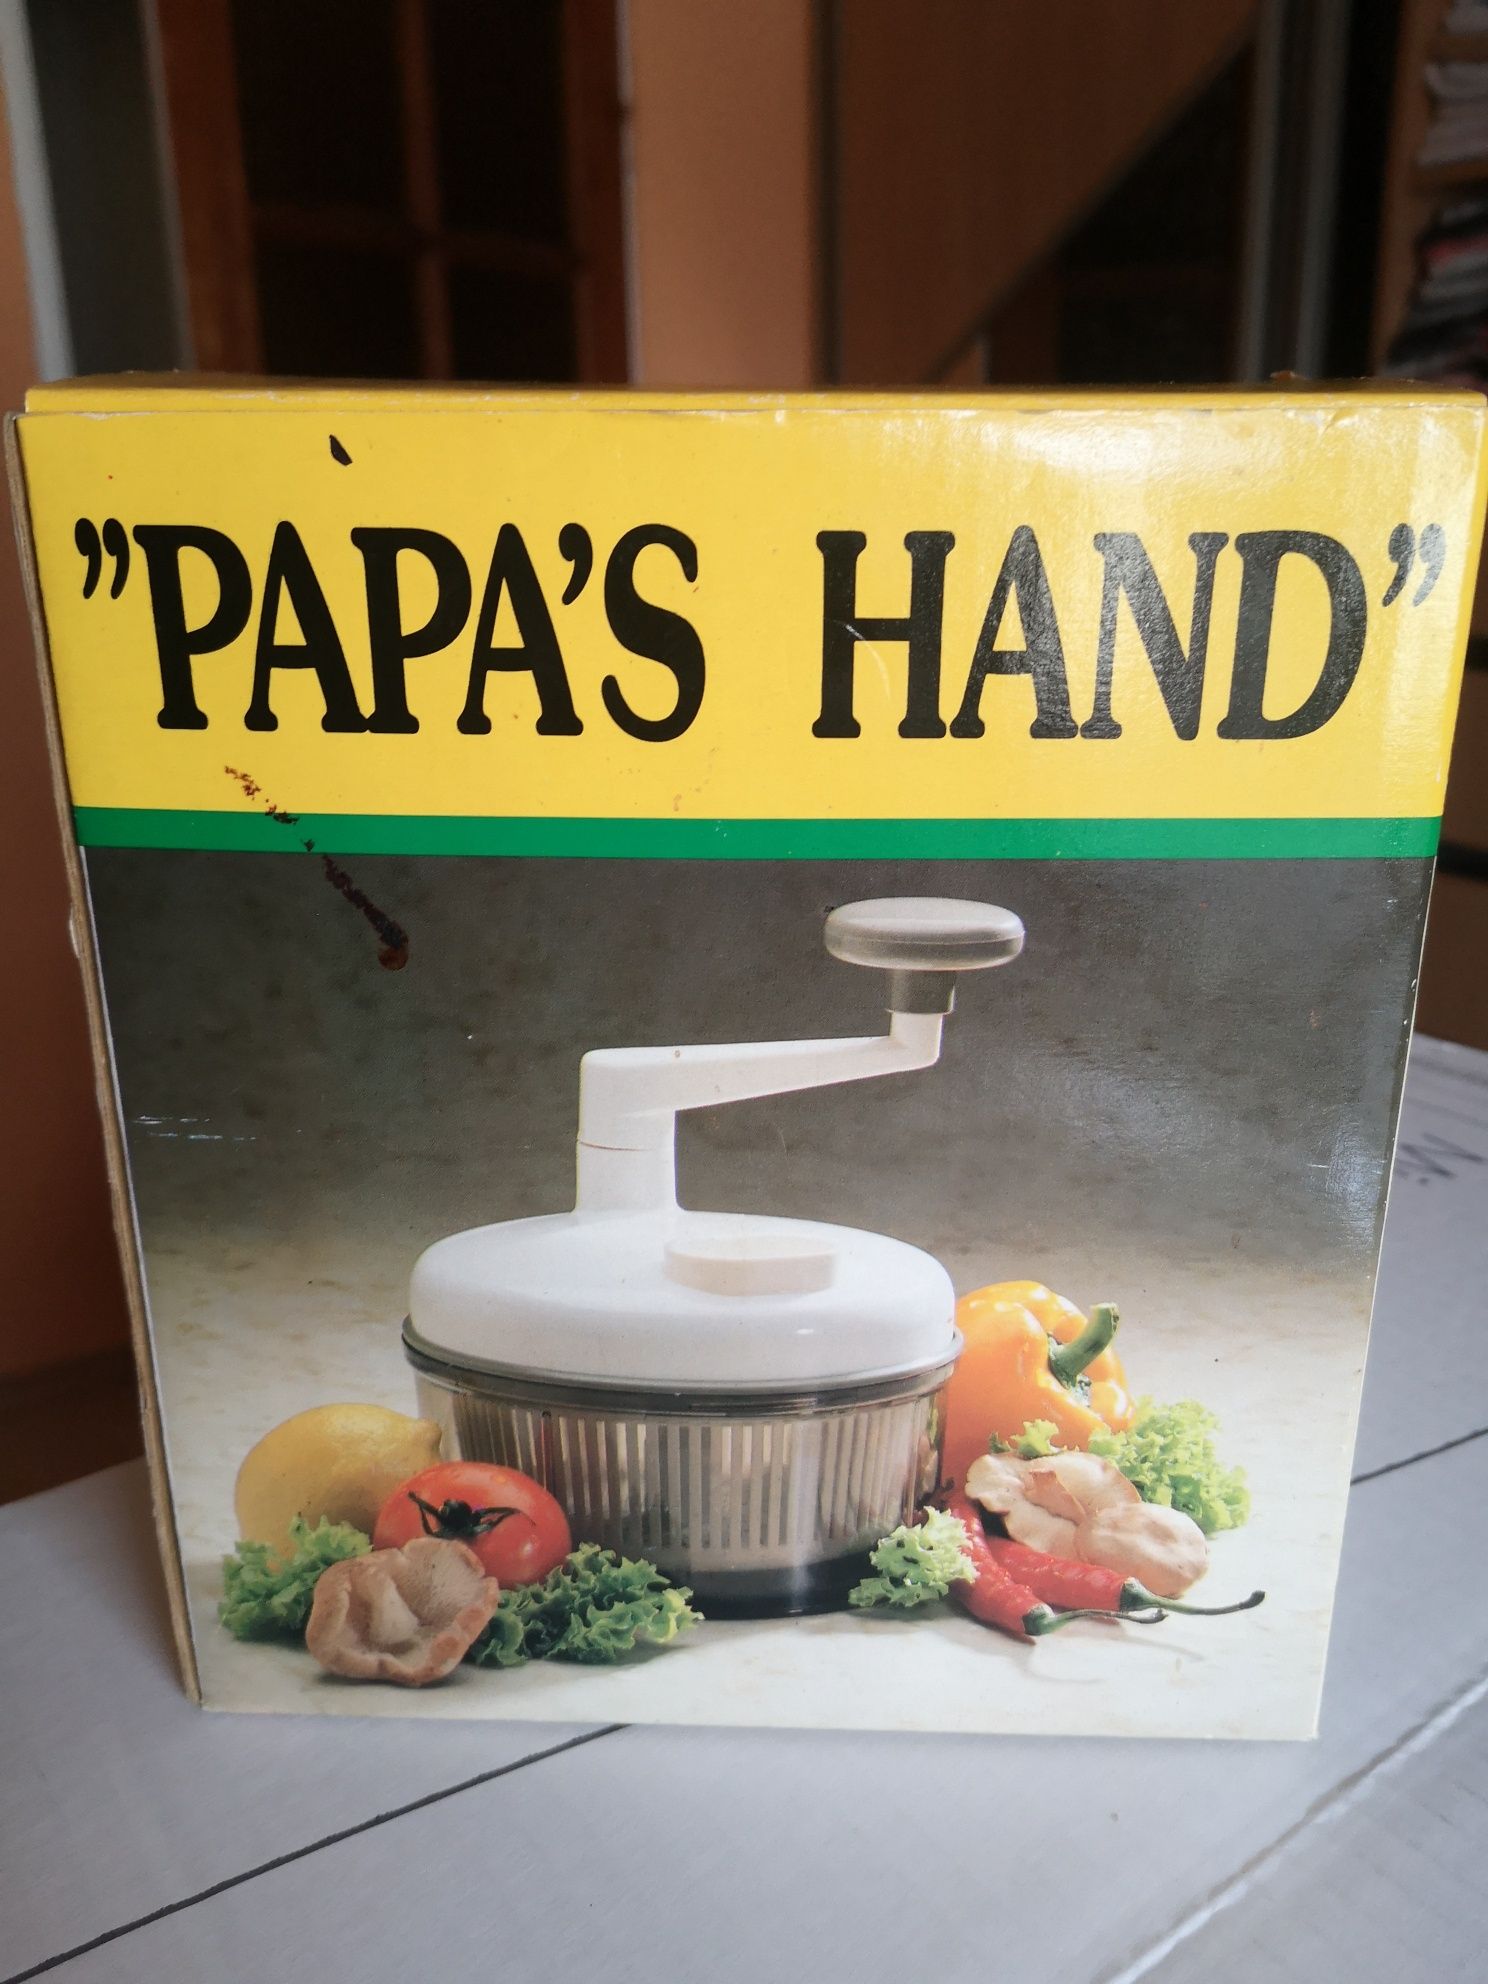 Rozdrabniacz ręczny do warzyw